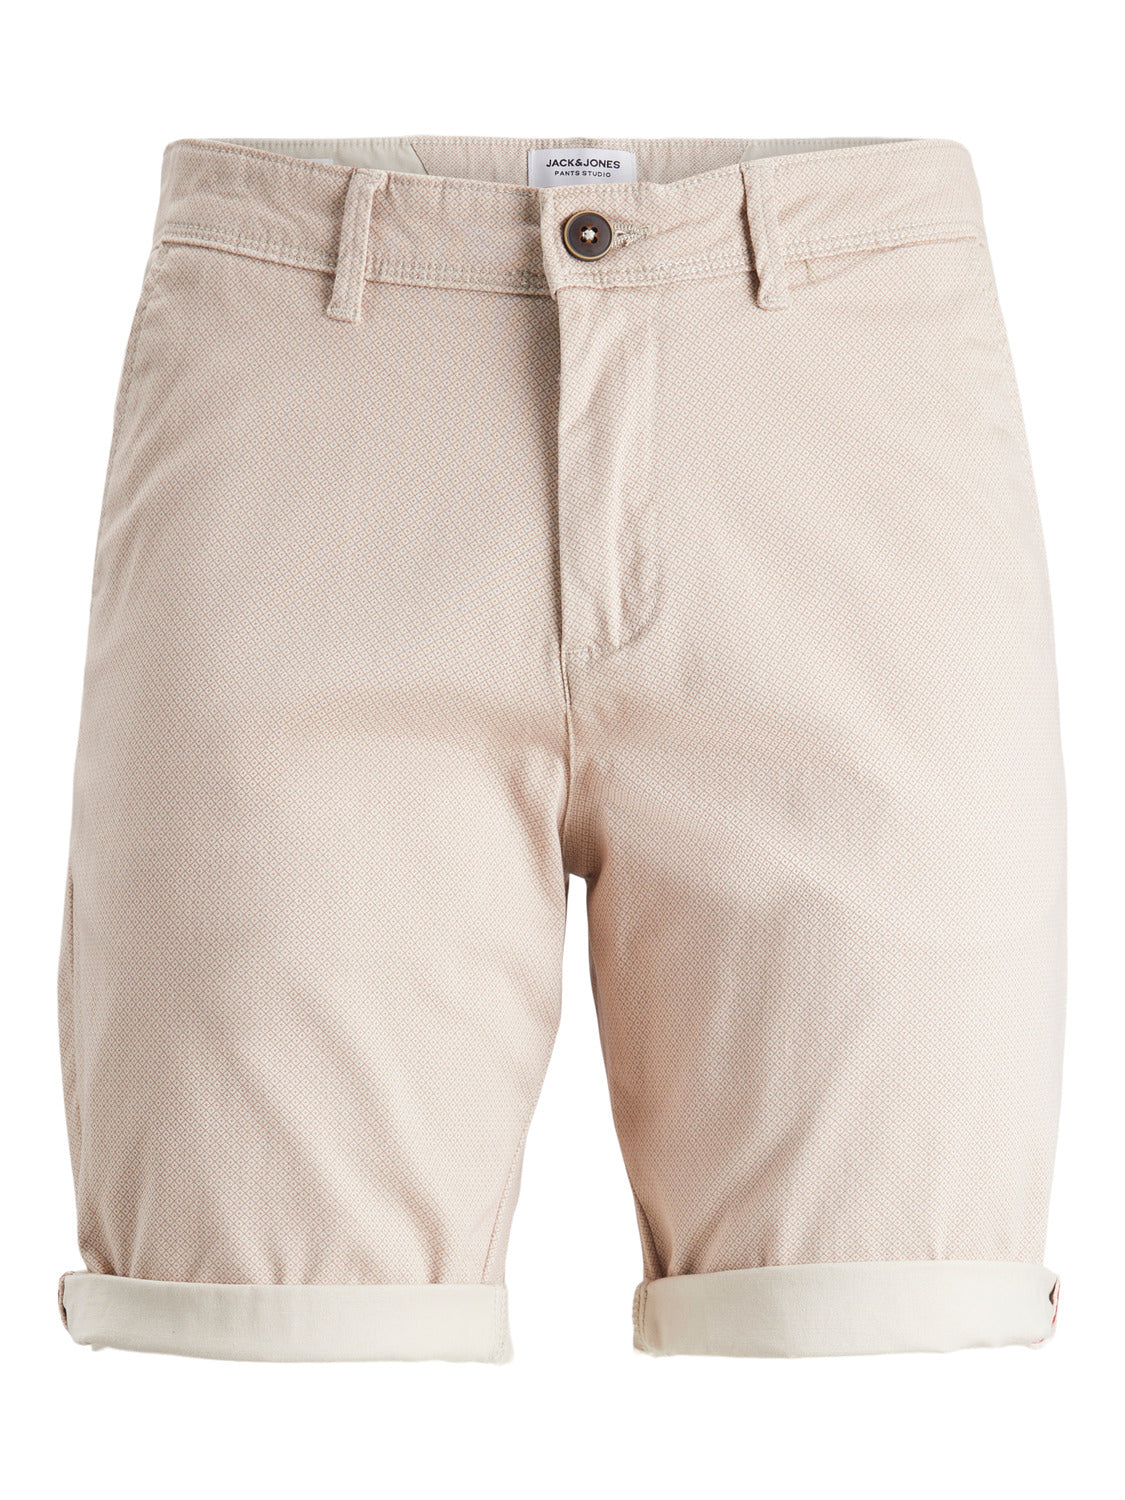 Pantalones cortos chinos JPSTBOWIE - Beige